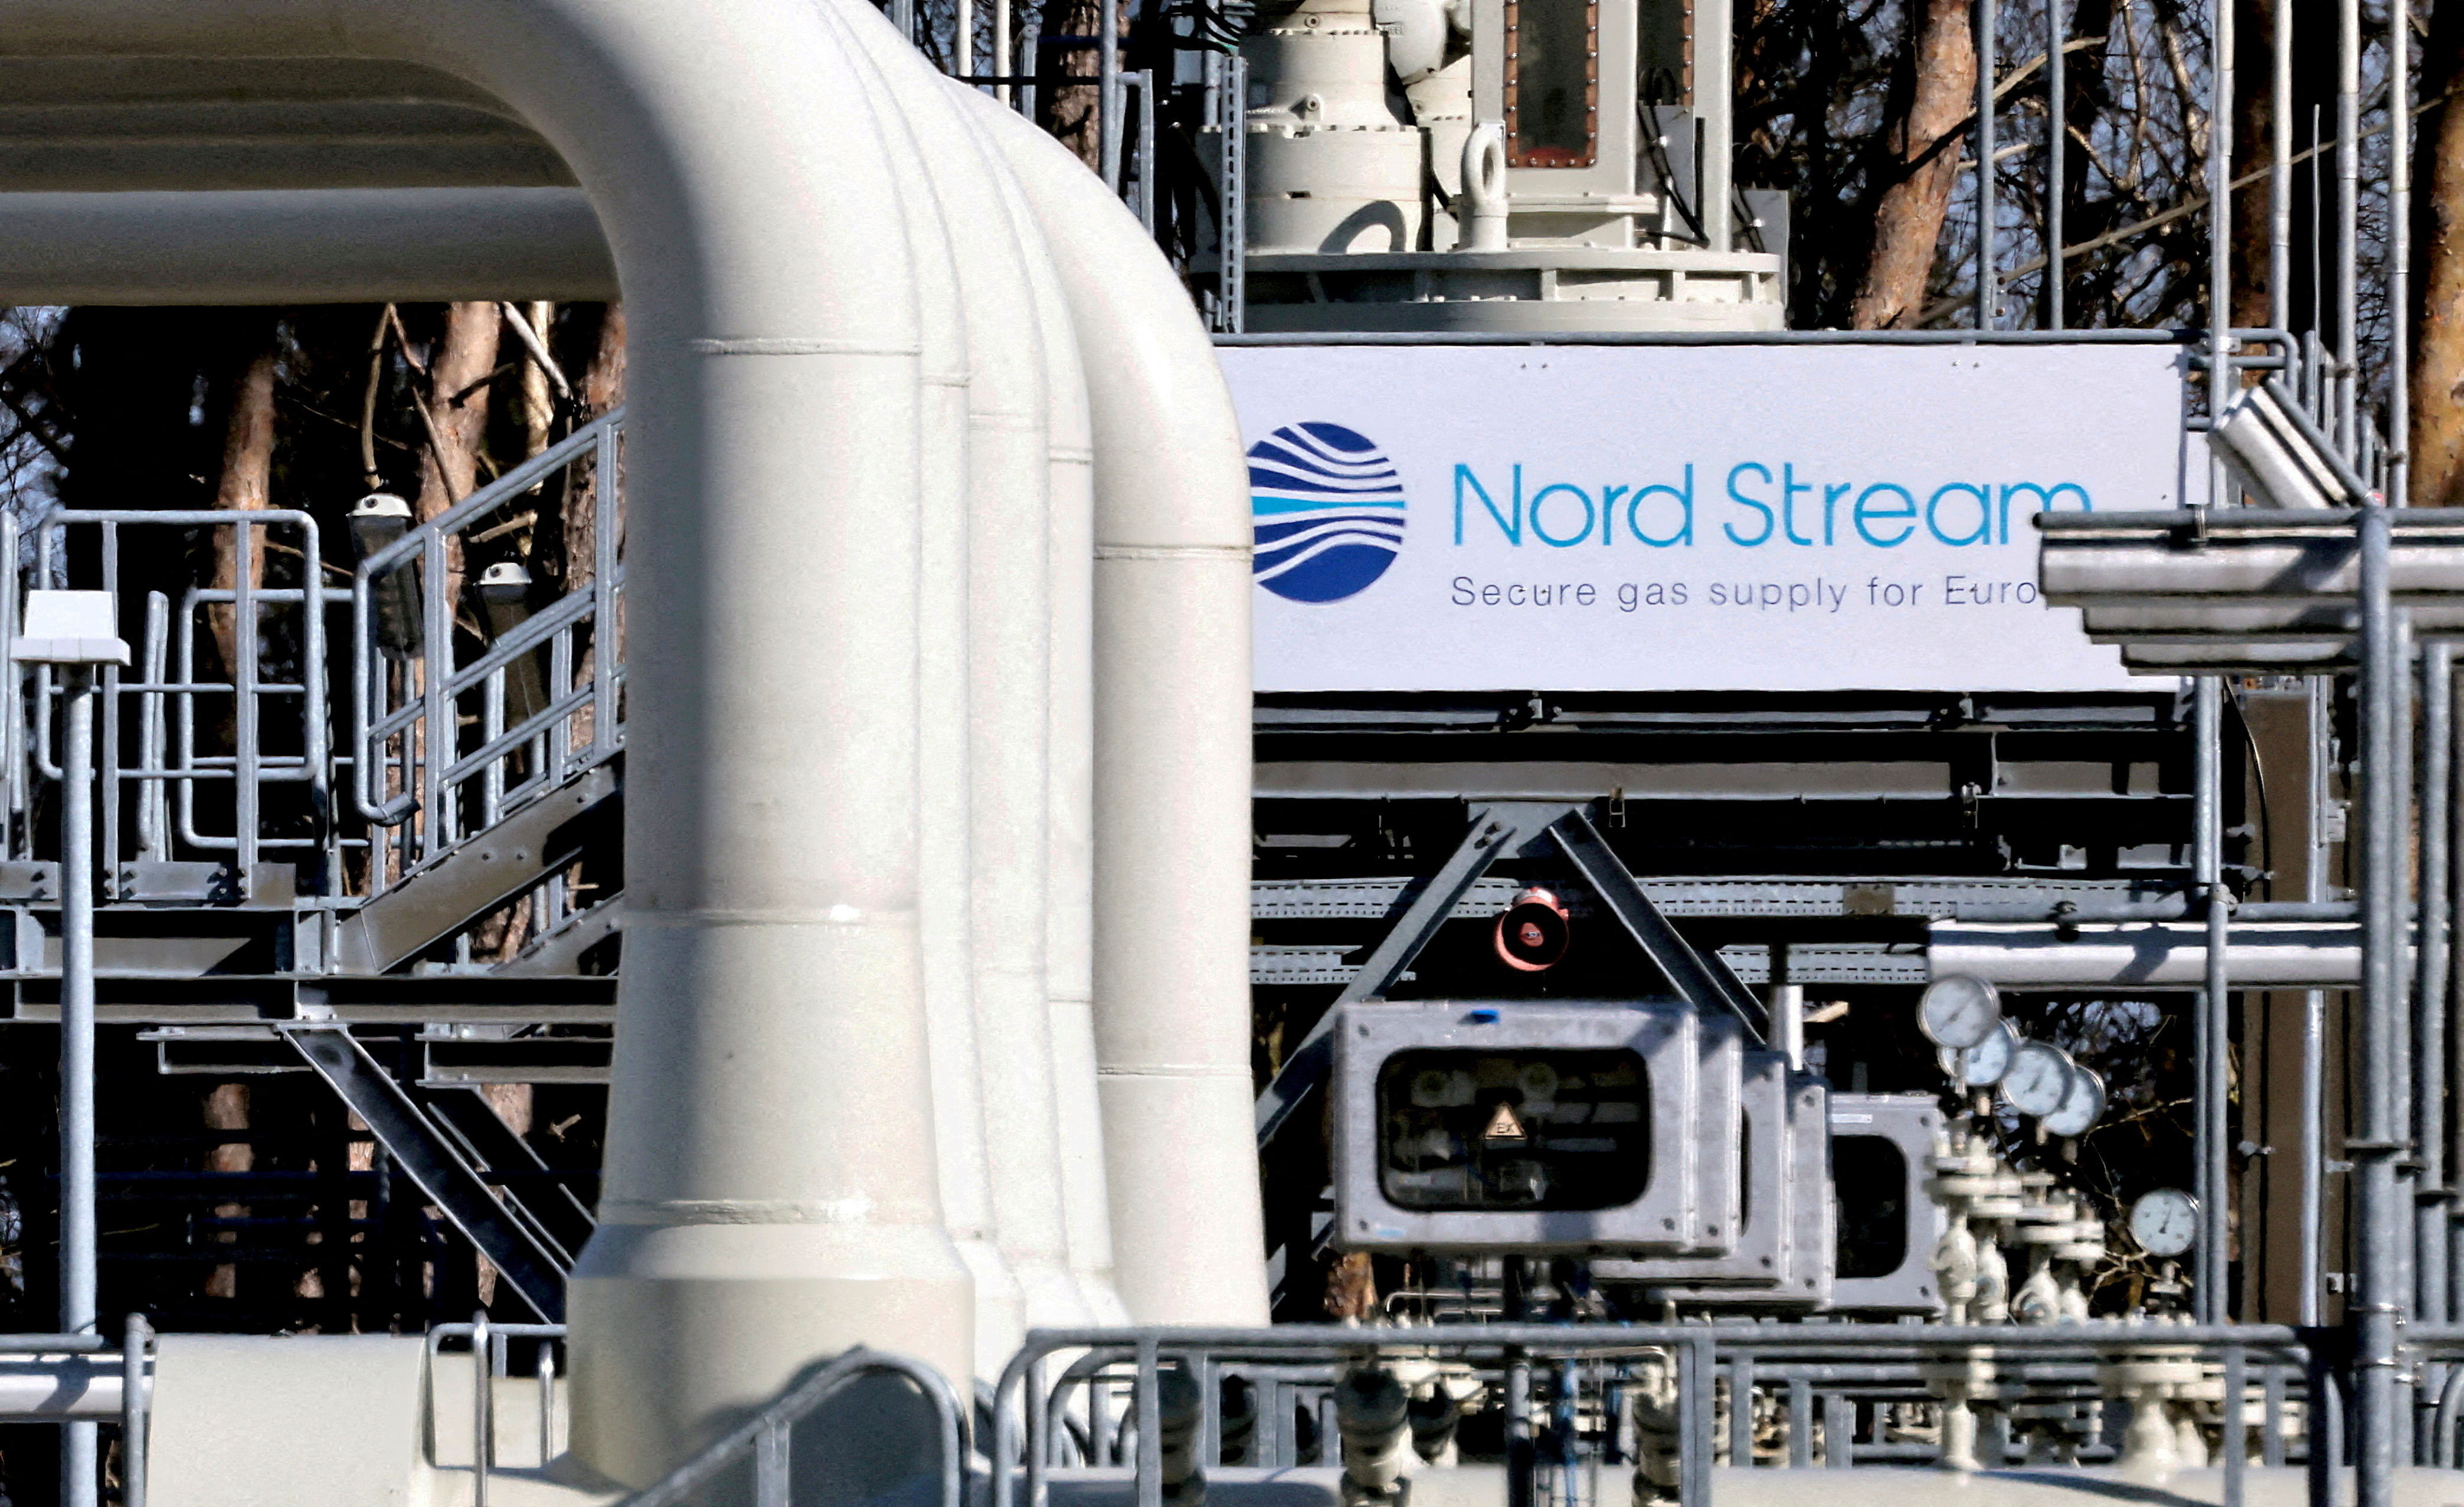 FOTO DE ARCHIVO: Las tuberías de las instalaciones del gasoducto Nord Stream 1 en Lubmin, Alemania, en marzo de este año. El cierre del gasoducto y la decisión europea de reducir las compras de energía a Rusia golpearían la economía del Kremlin (Reuters)